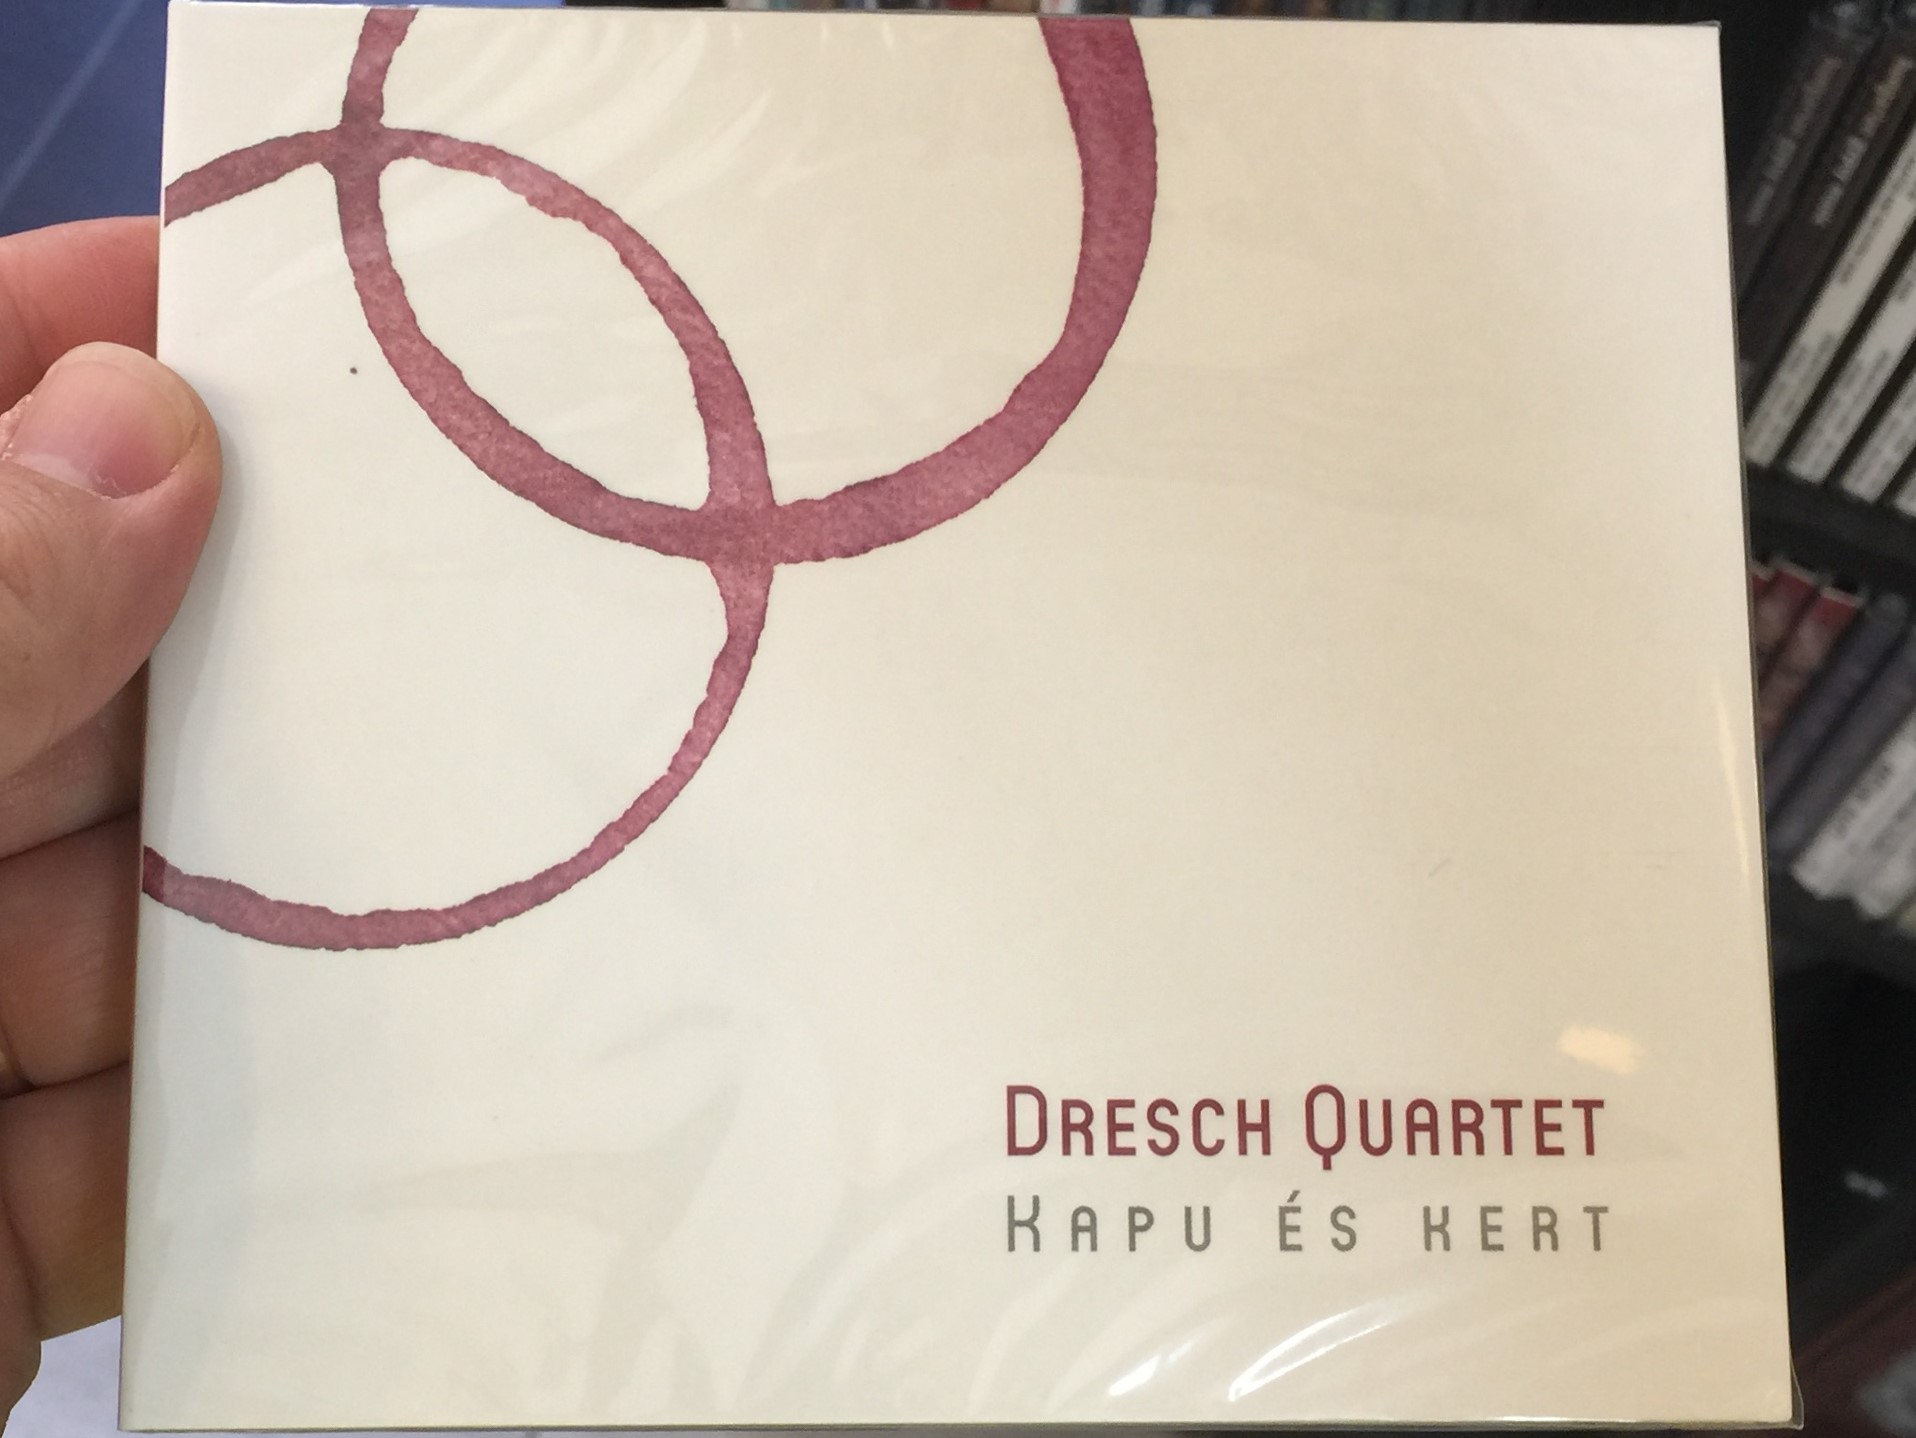 dresch-quartet-kapu-s-kert-fon-records-audio-cd-2013-5998048528929-1-.jpg